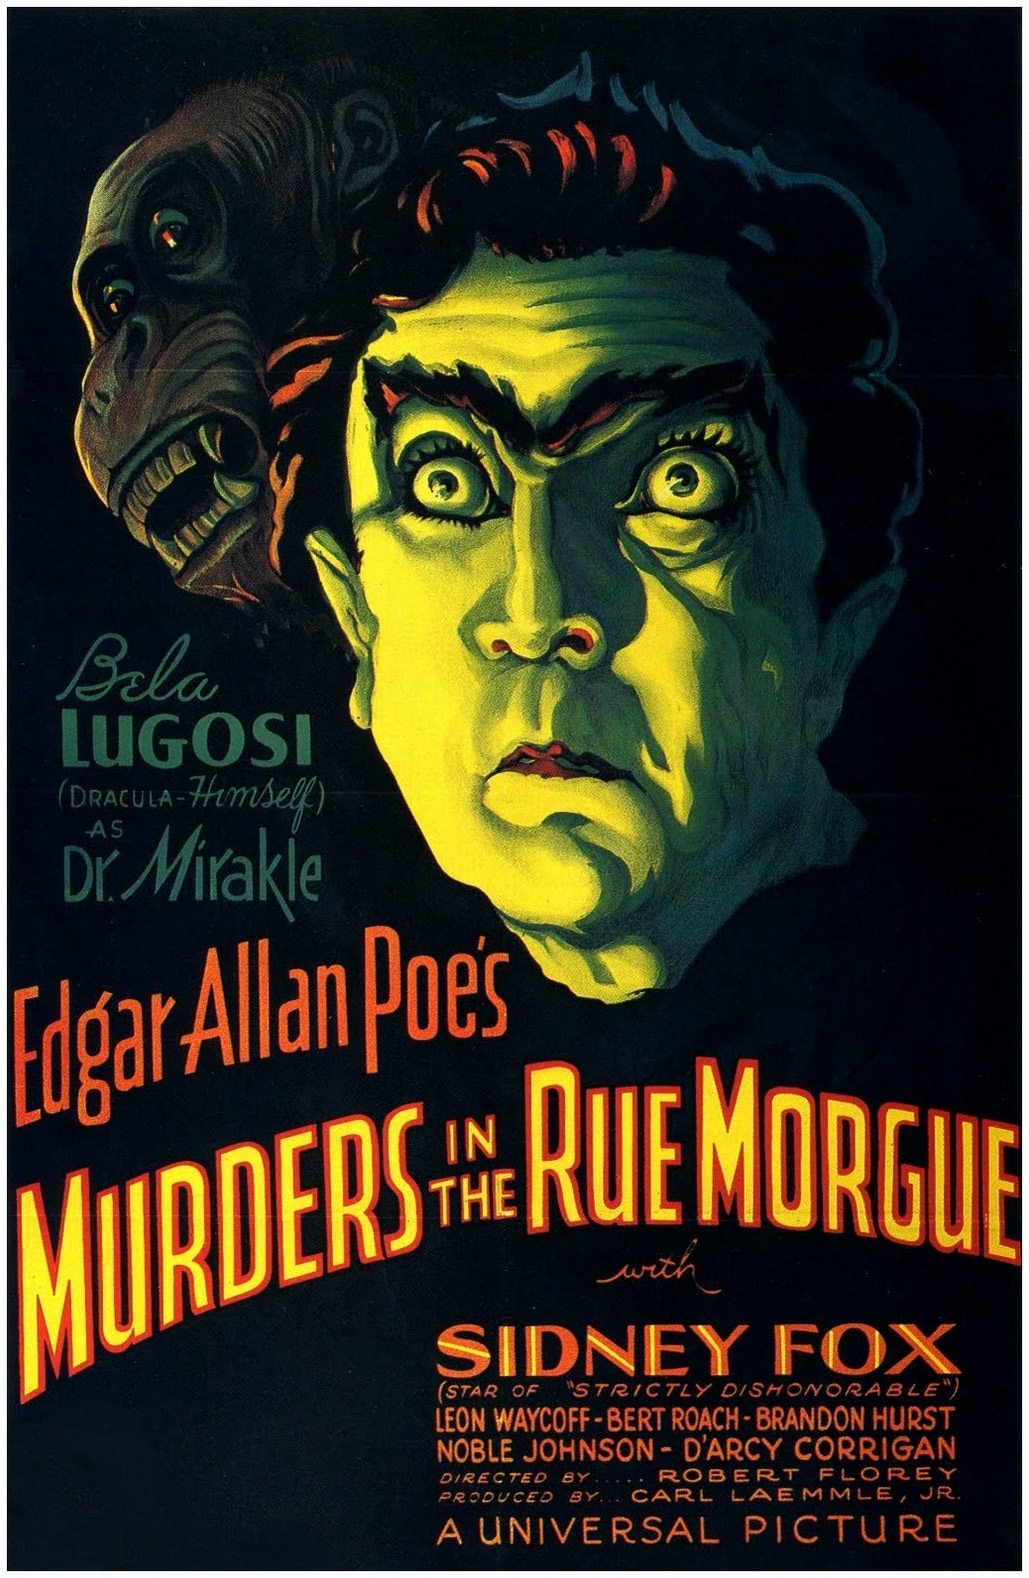 Murders in the Rue Morgue (1932 film) - Wikipedia